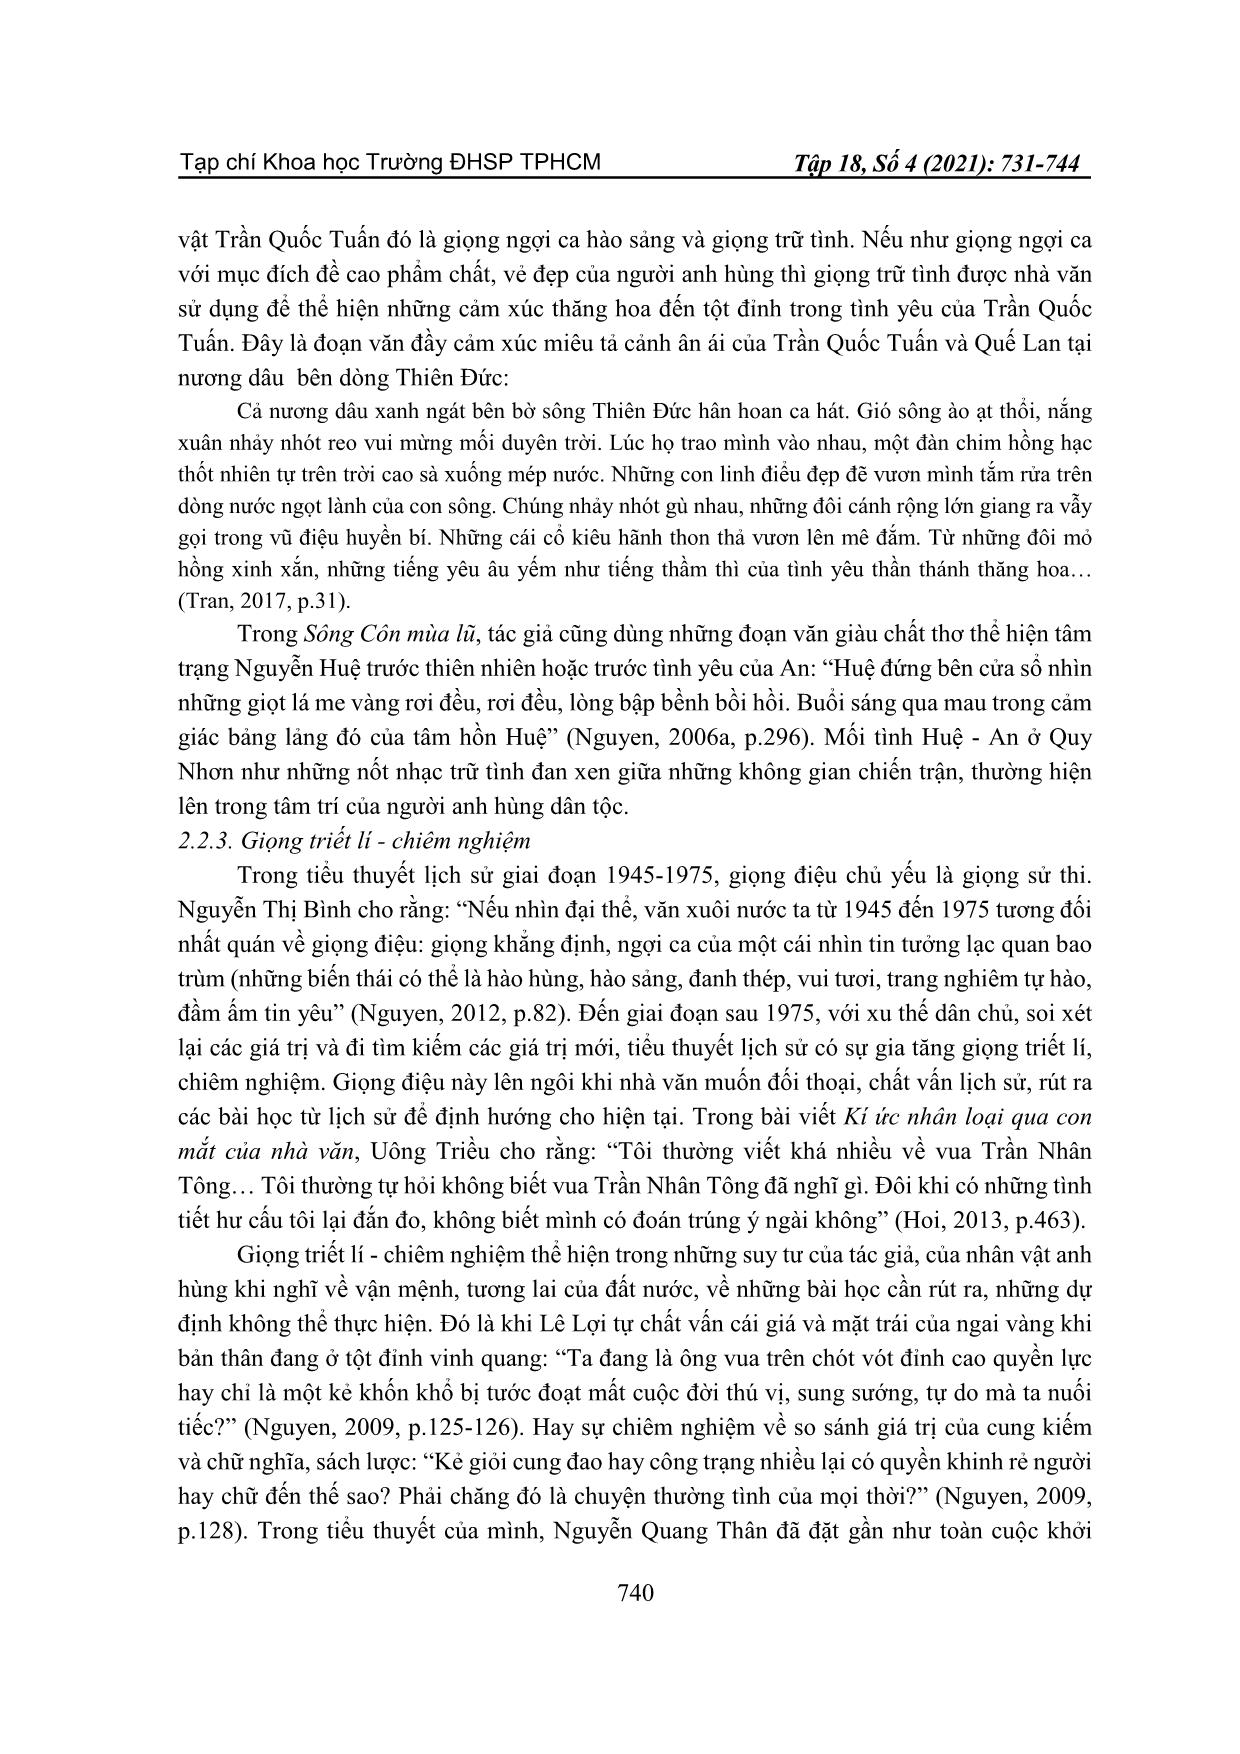 Điểm nhìn và giọng điệu trần thuật khi miêu tả nhân vật anh hùng trong tiểu thuyết lịch sử Việt Nam sau 1975 trang 10